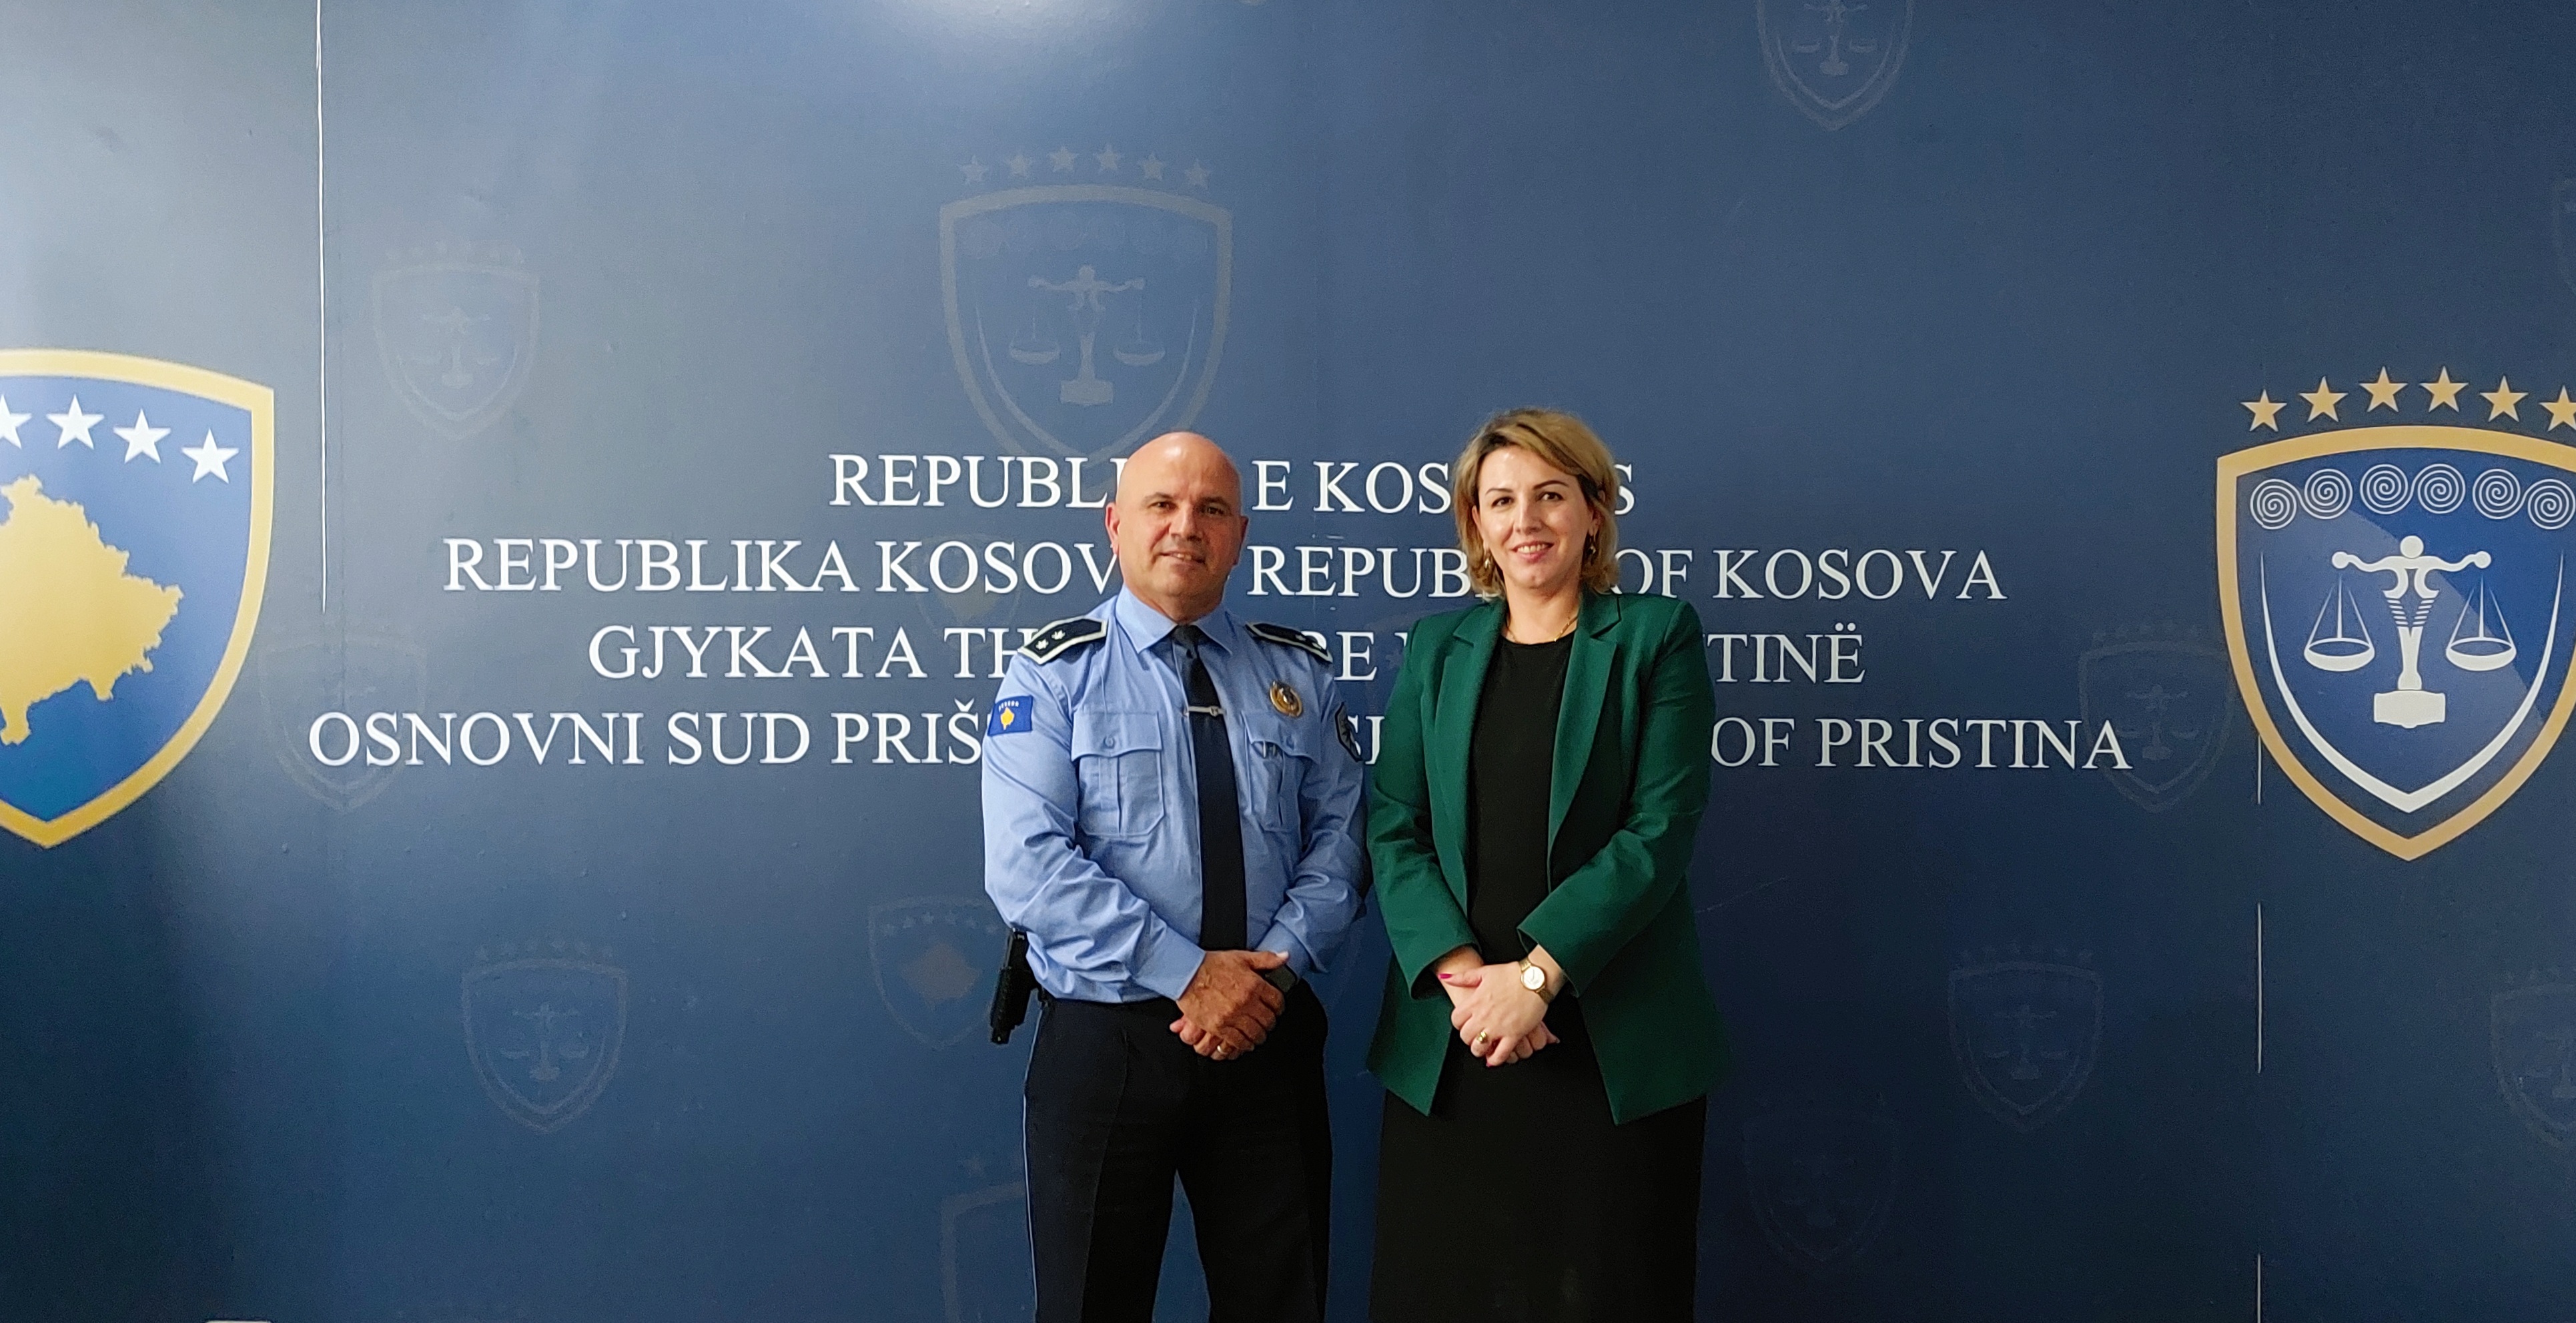 Kryetarja e gjykatës ka pritur në takim Drejtorin e Policisë në regjionin e Prishtinës